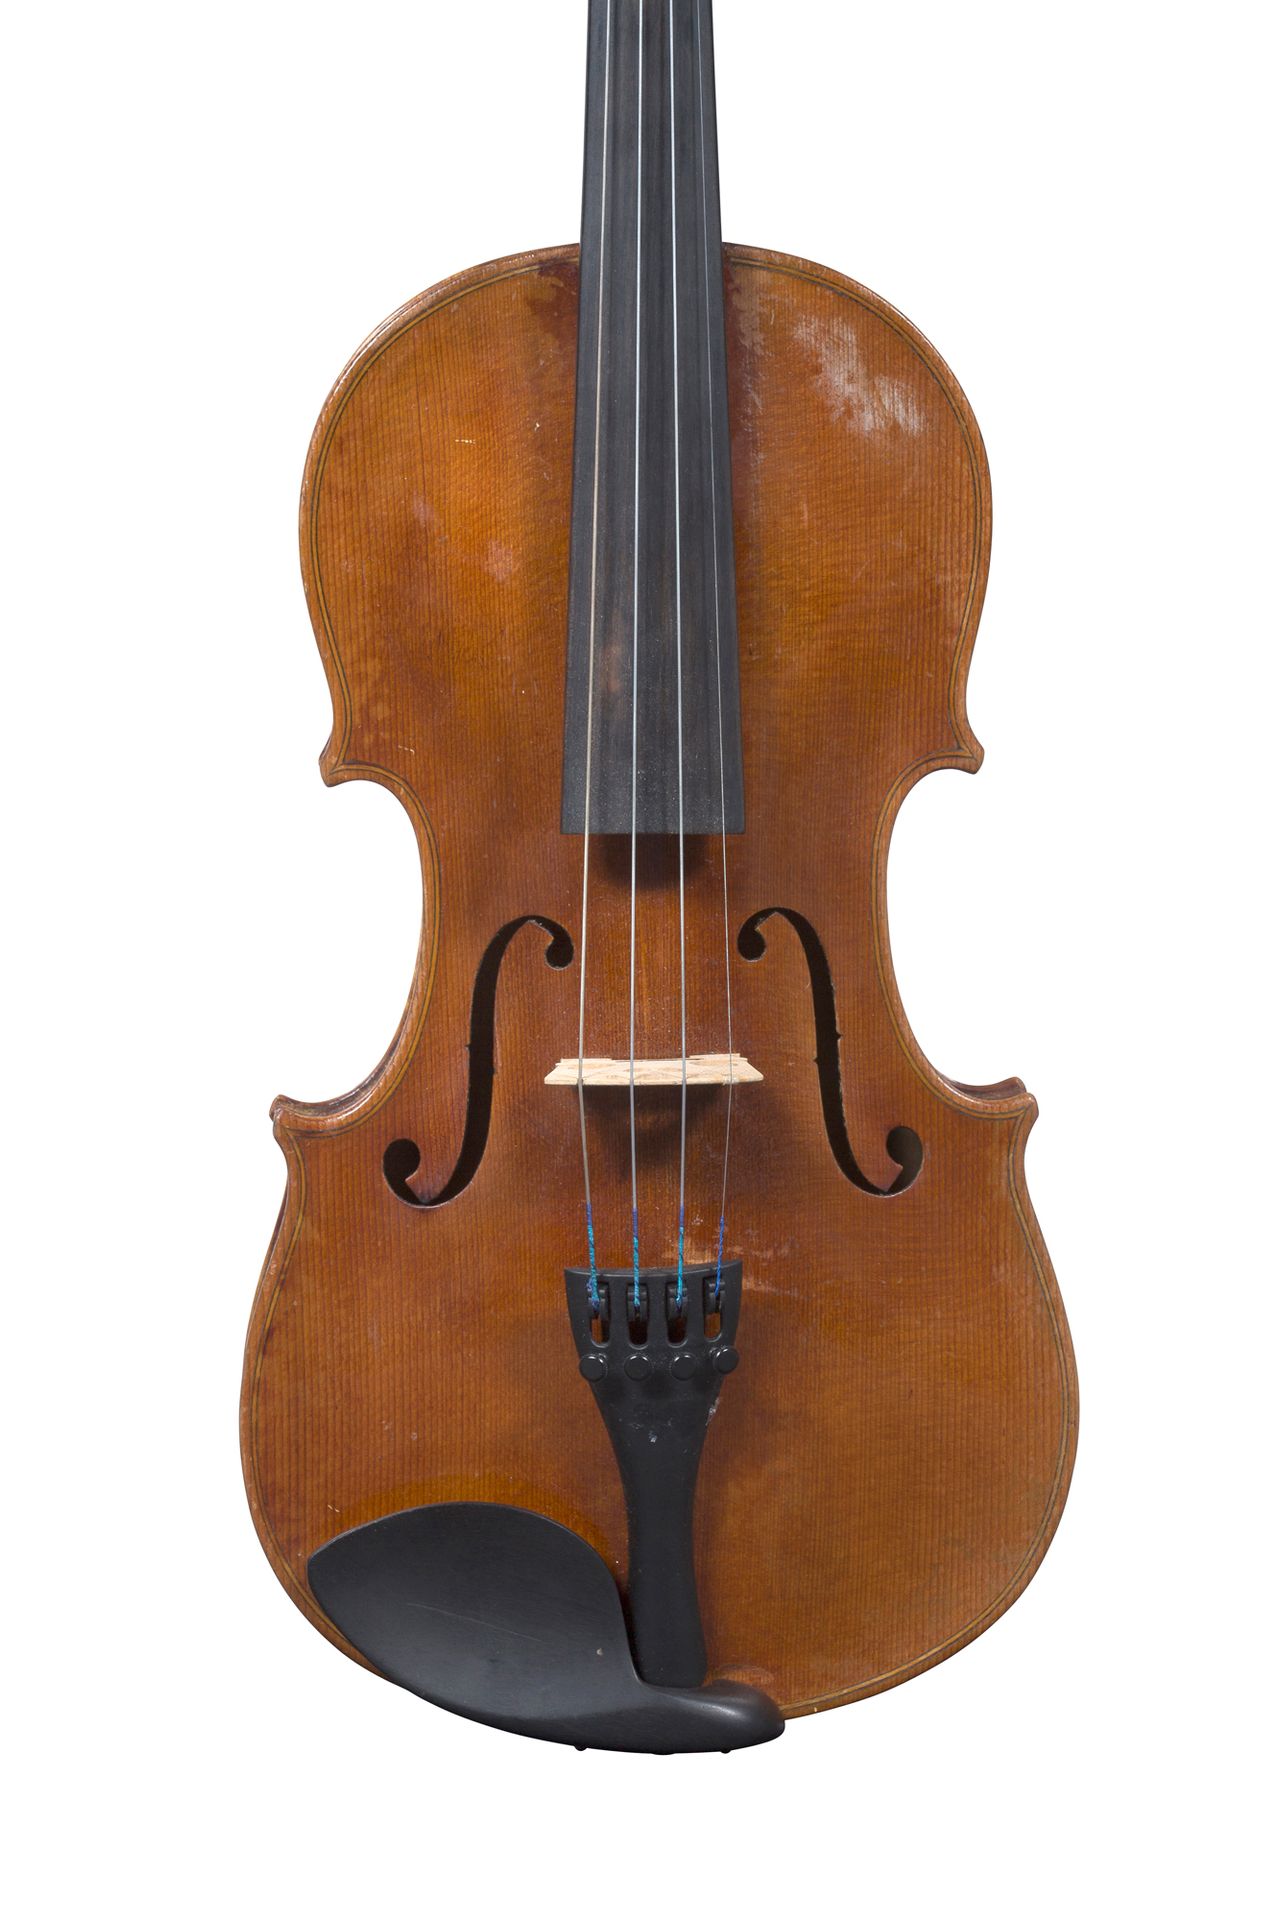 Null Deutsche Geige
Arbeit um 1900-20
Trägt ein Etikett von JB Schweitzer 1813.
&hellip;